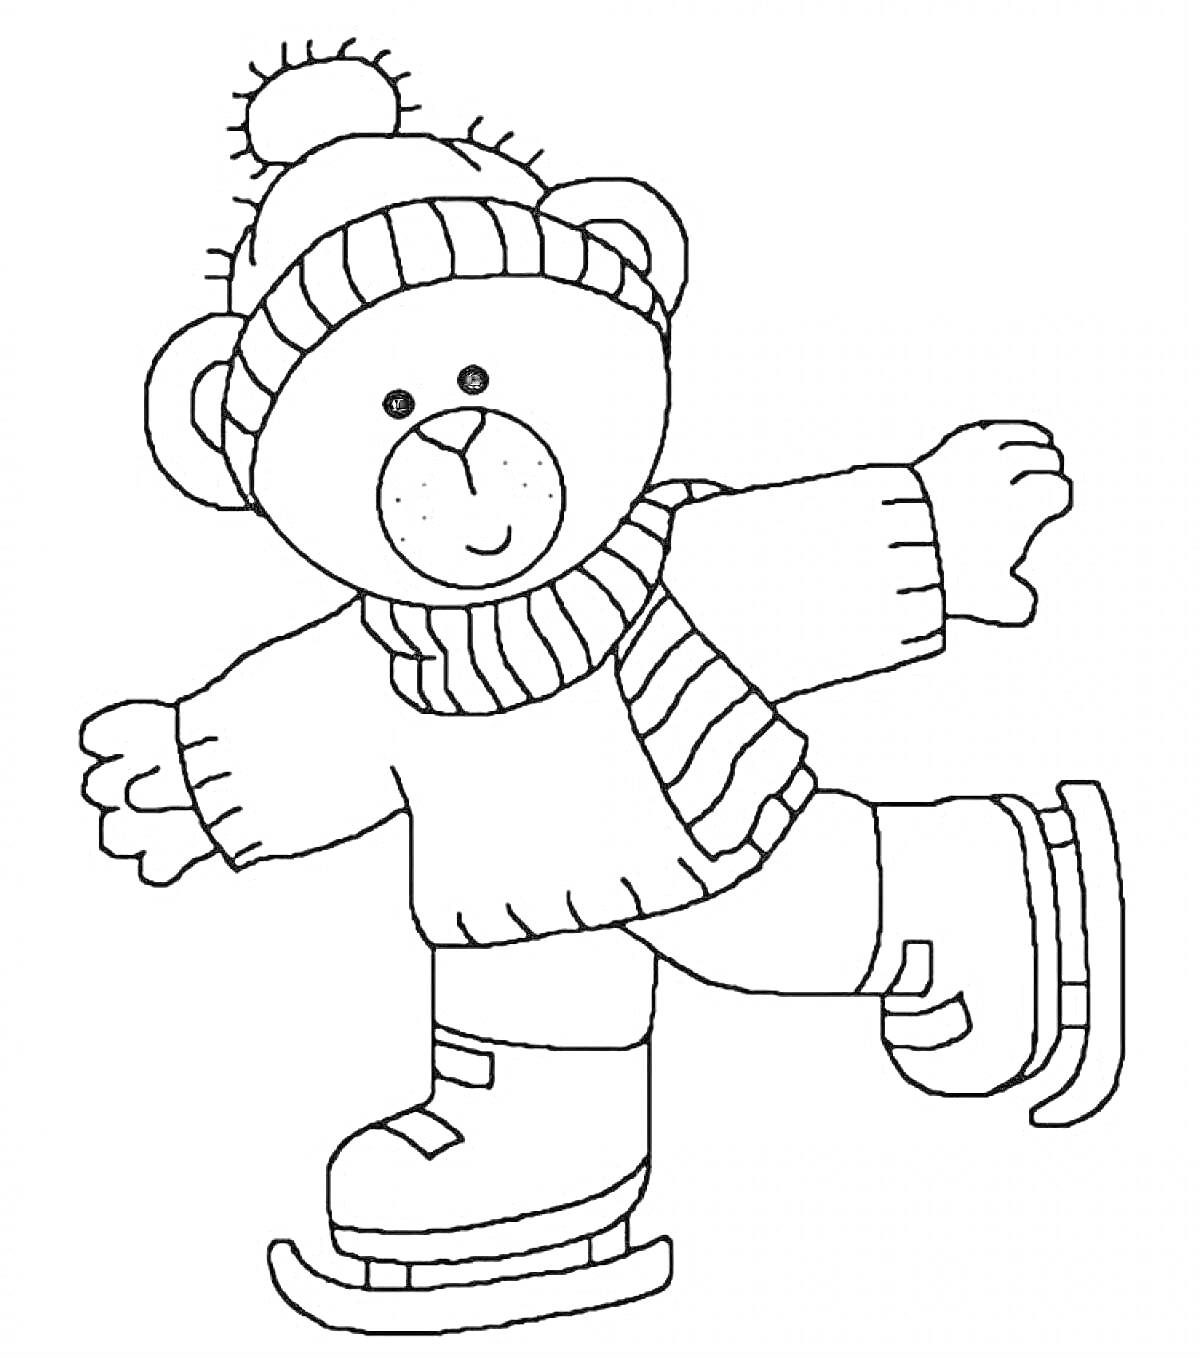 Раскраска Медвежонок в шапке и шарфе на коньках